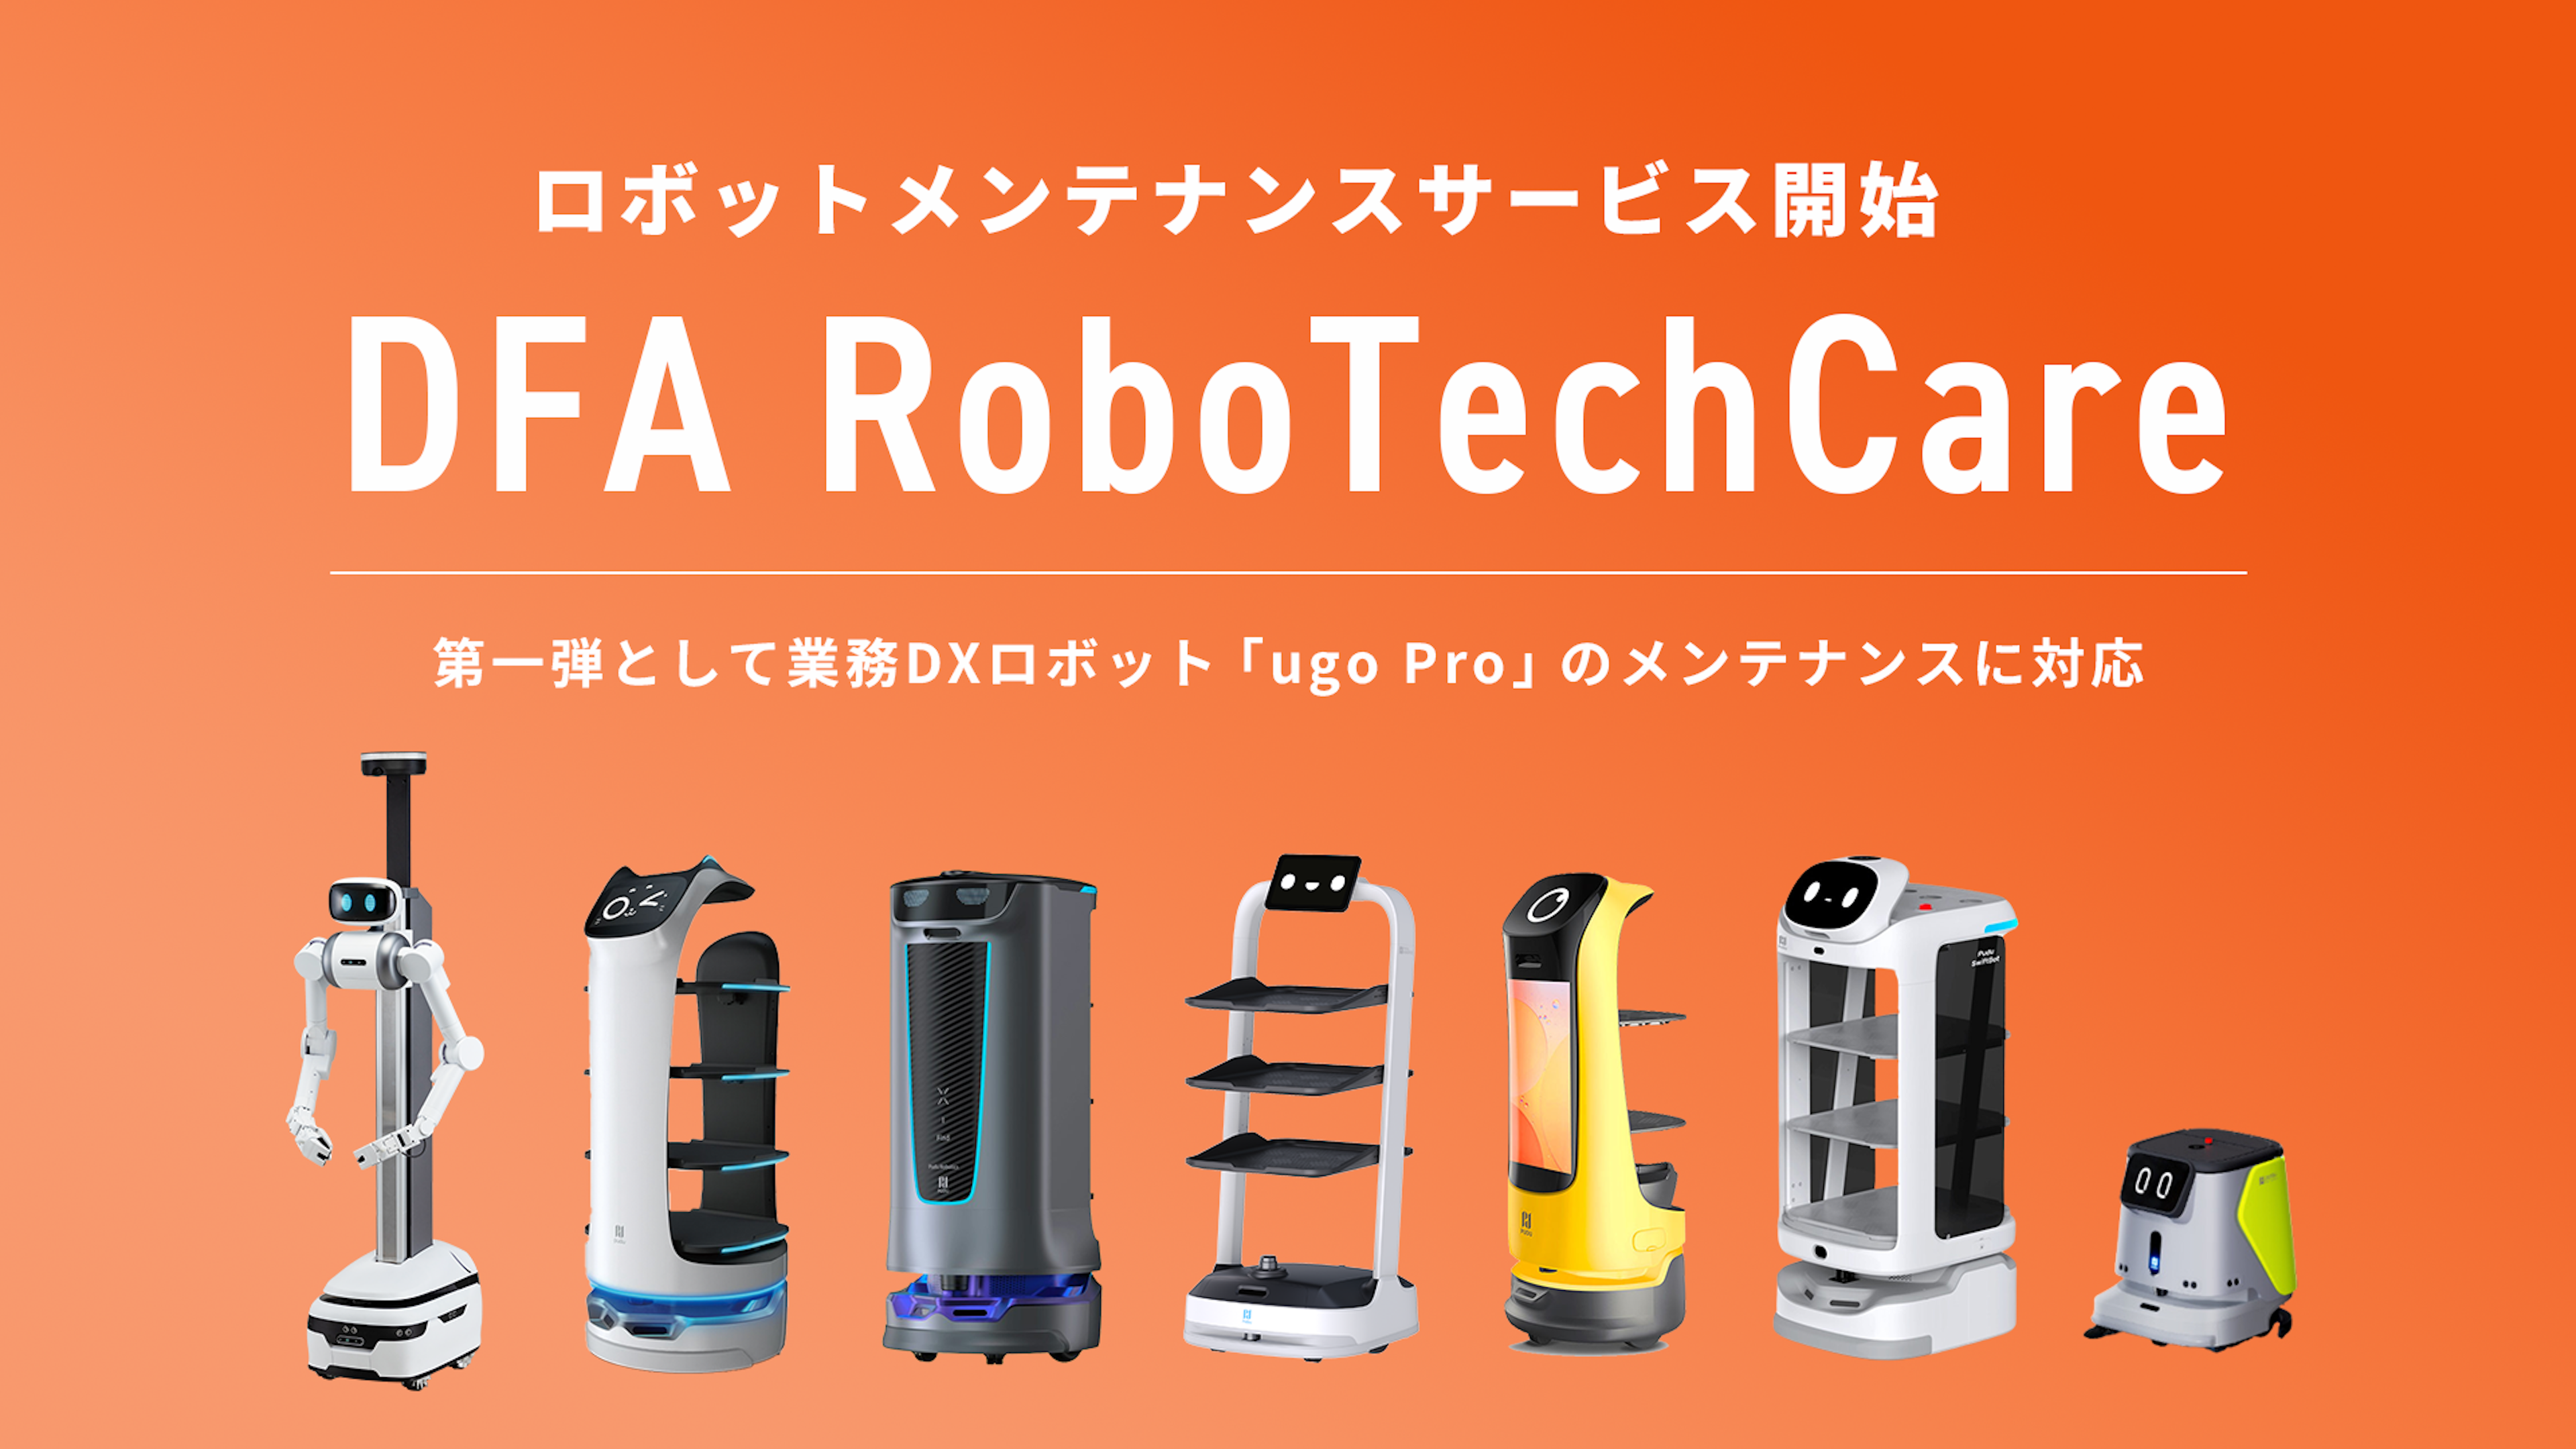 全国をカバーするサービスロボットメンテナンス事業「DFA RoboTechCare」を提供開始
のキービジュアル